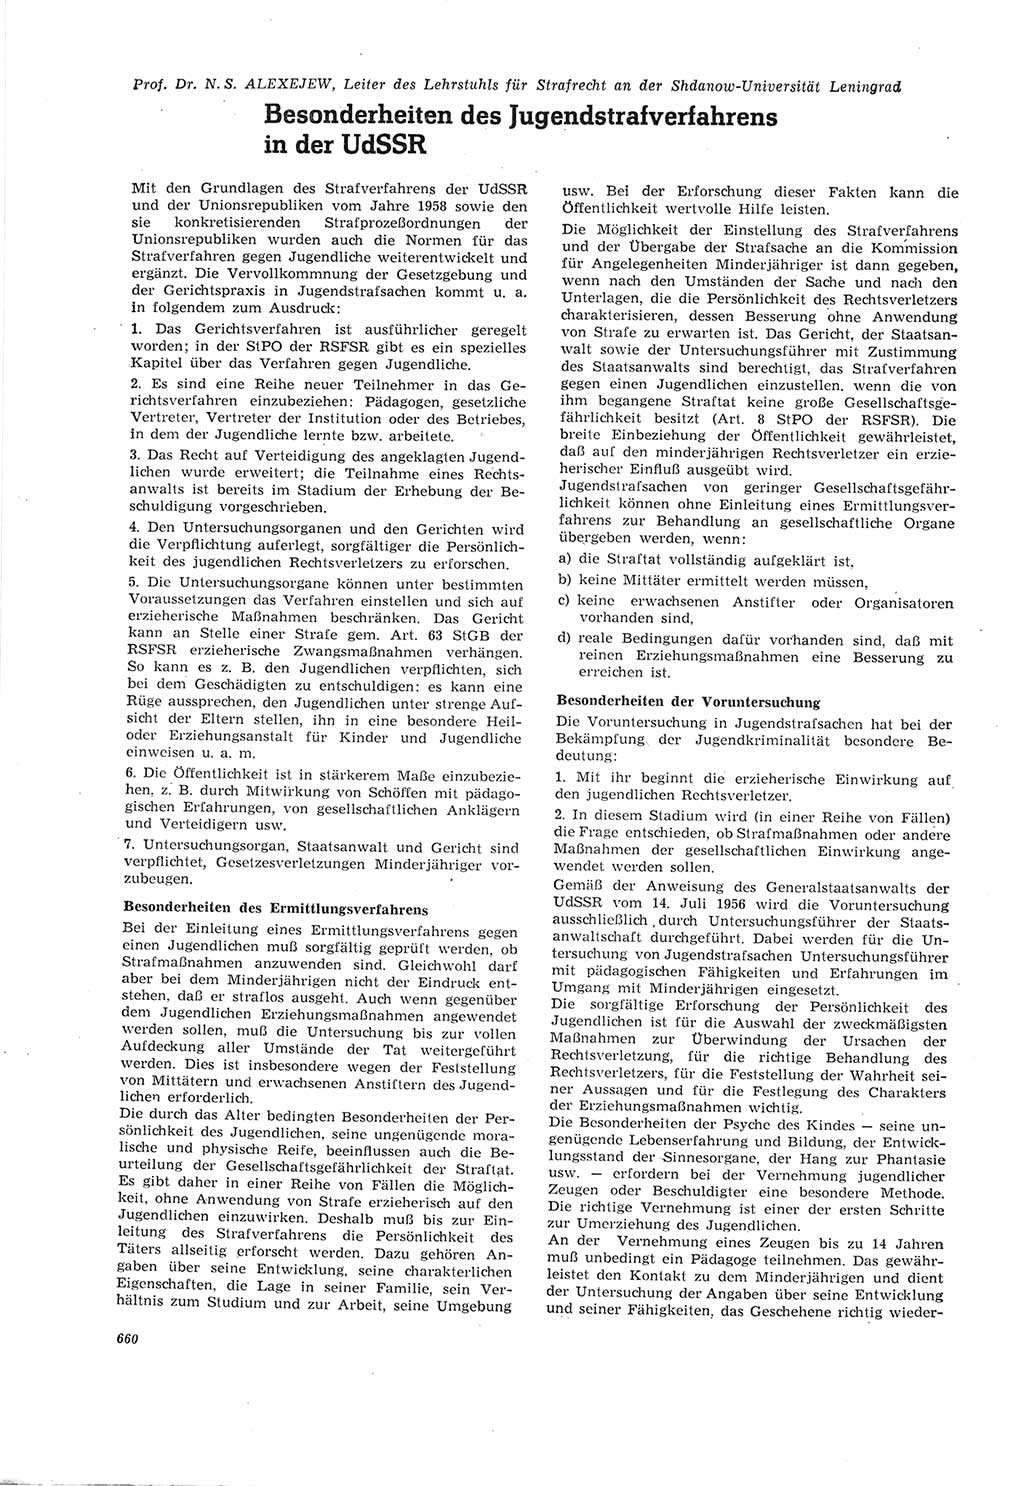 Neue Justiz (NJ), Zeitschrift für Recht und Rechtswissenschaft [Deutsche Demokratische Republik (DDR)], 18. Jahrgang 1964, Seite 660 (NJ DDR 1964, S. 660)